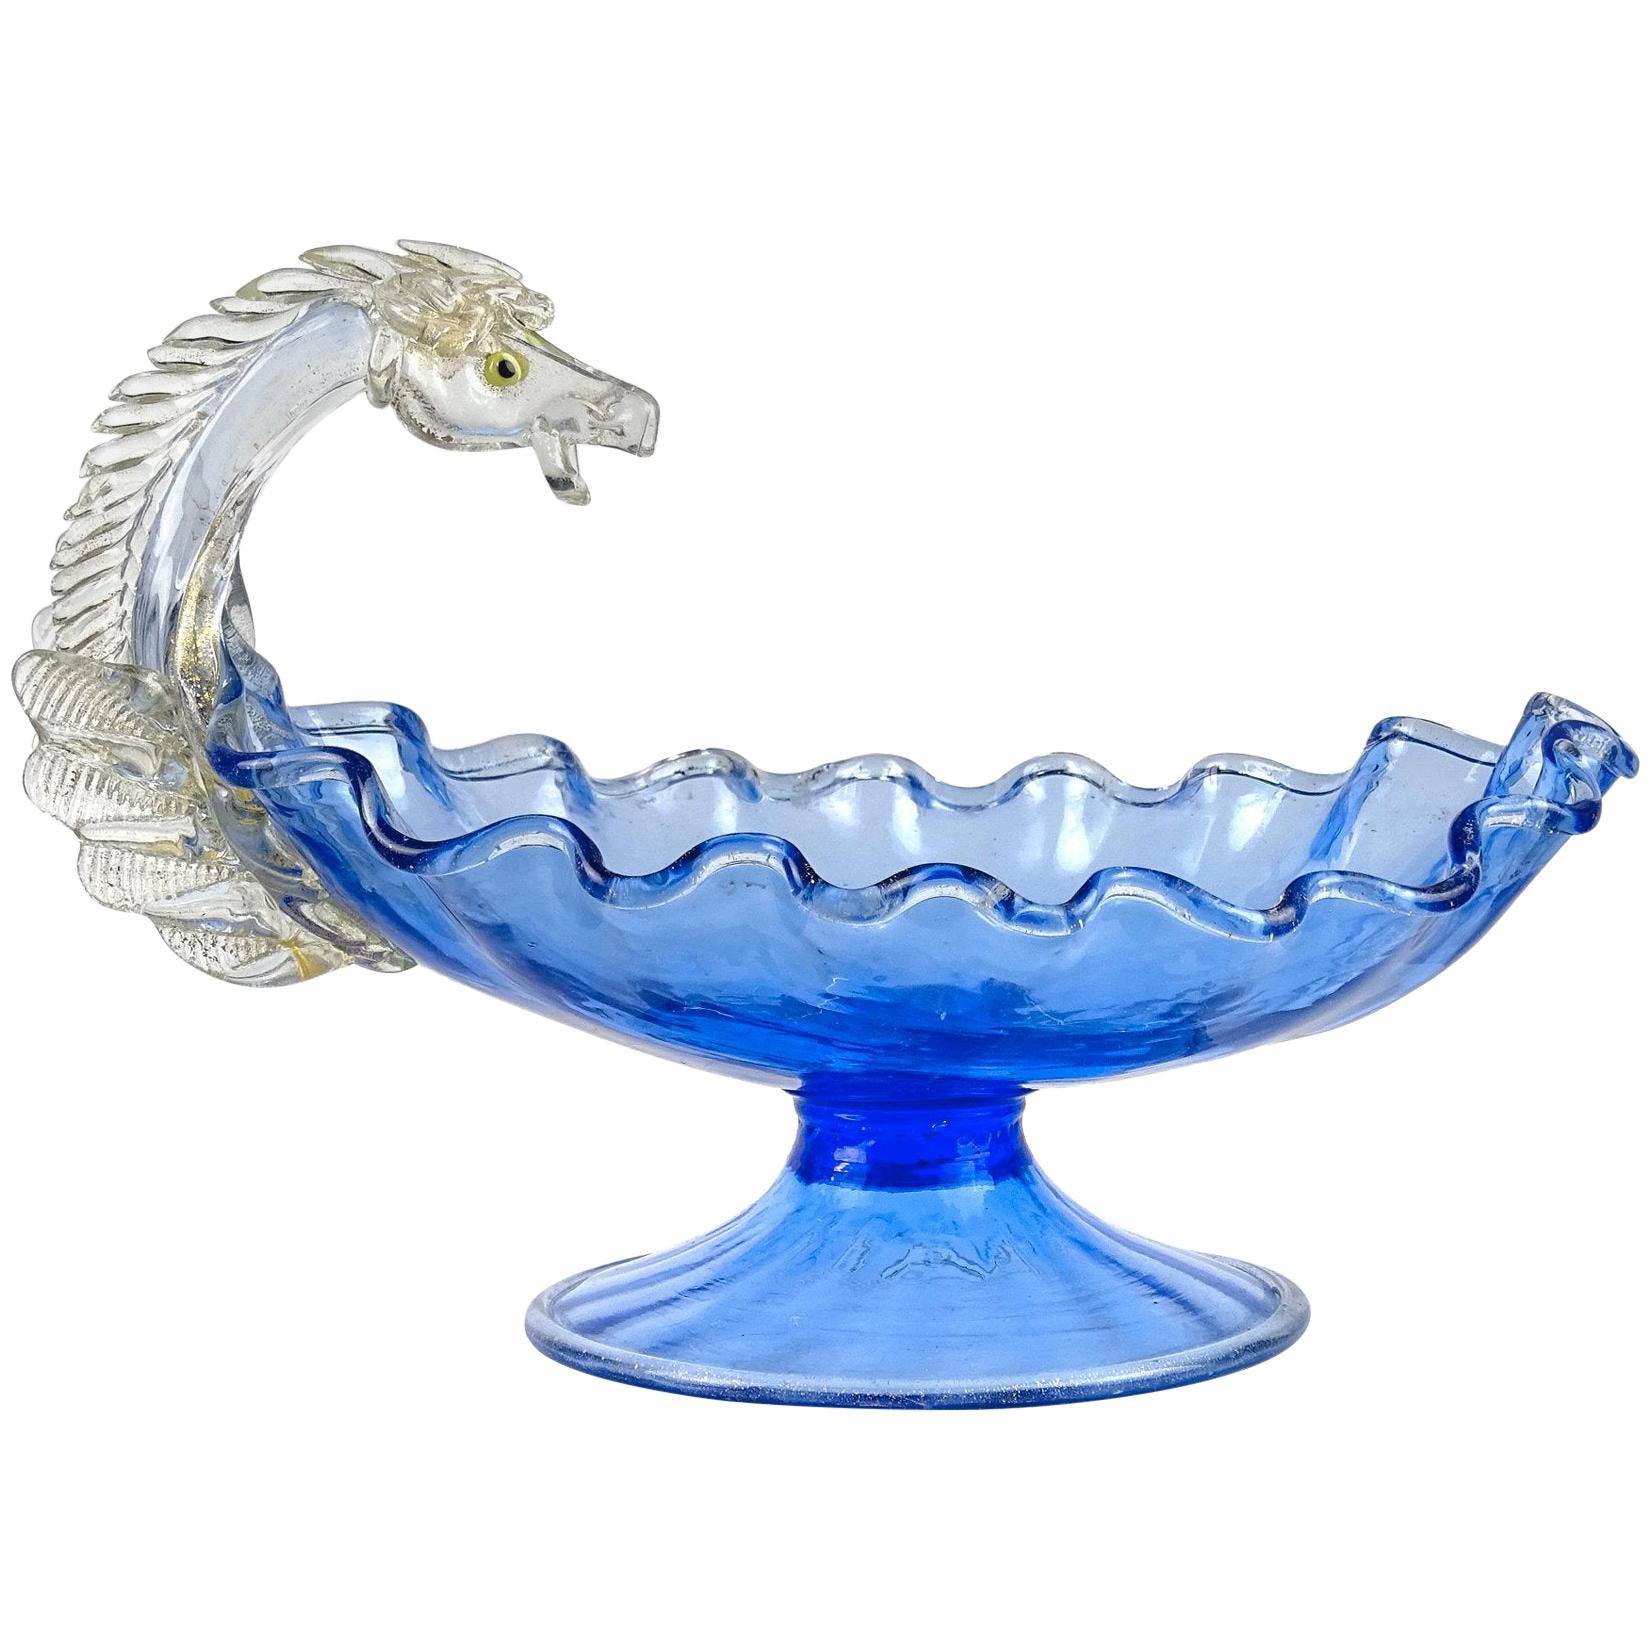 Italienische Kompottschale aus venezianischem Kunstglas mit blauen und goldenen Flecken von Pegasus